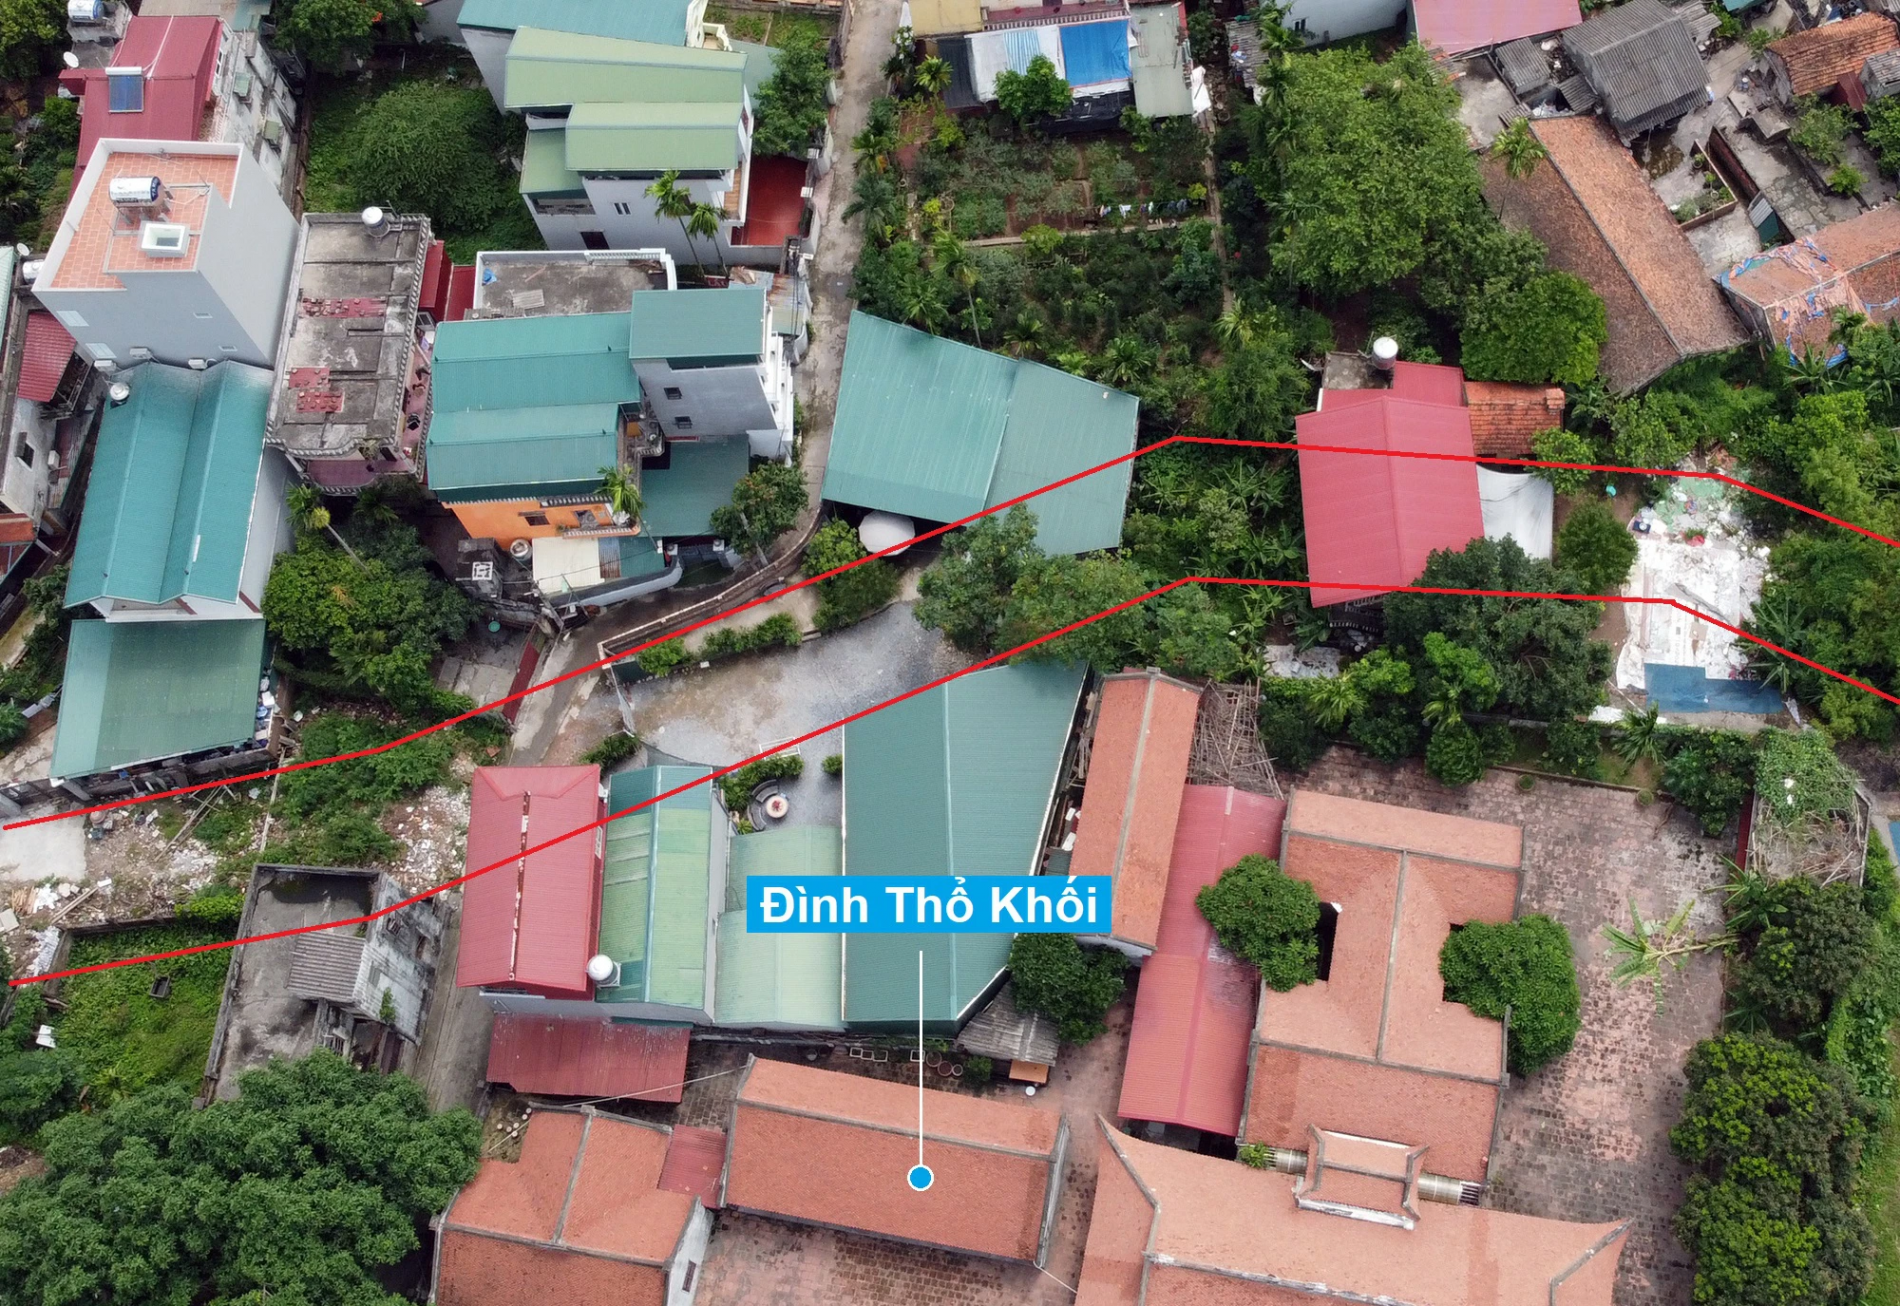 Những khu đất sắp thu hồi để mở đường ở phường Cự Khối, Long Biên, Hà Nội (phần 1) - Ảnh 11.